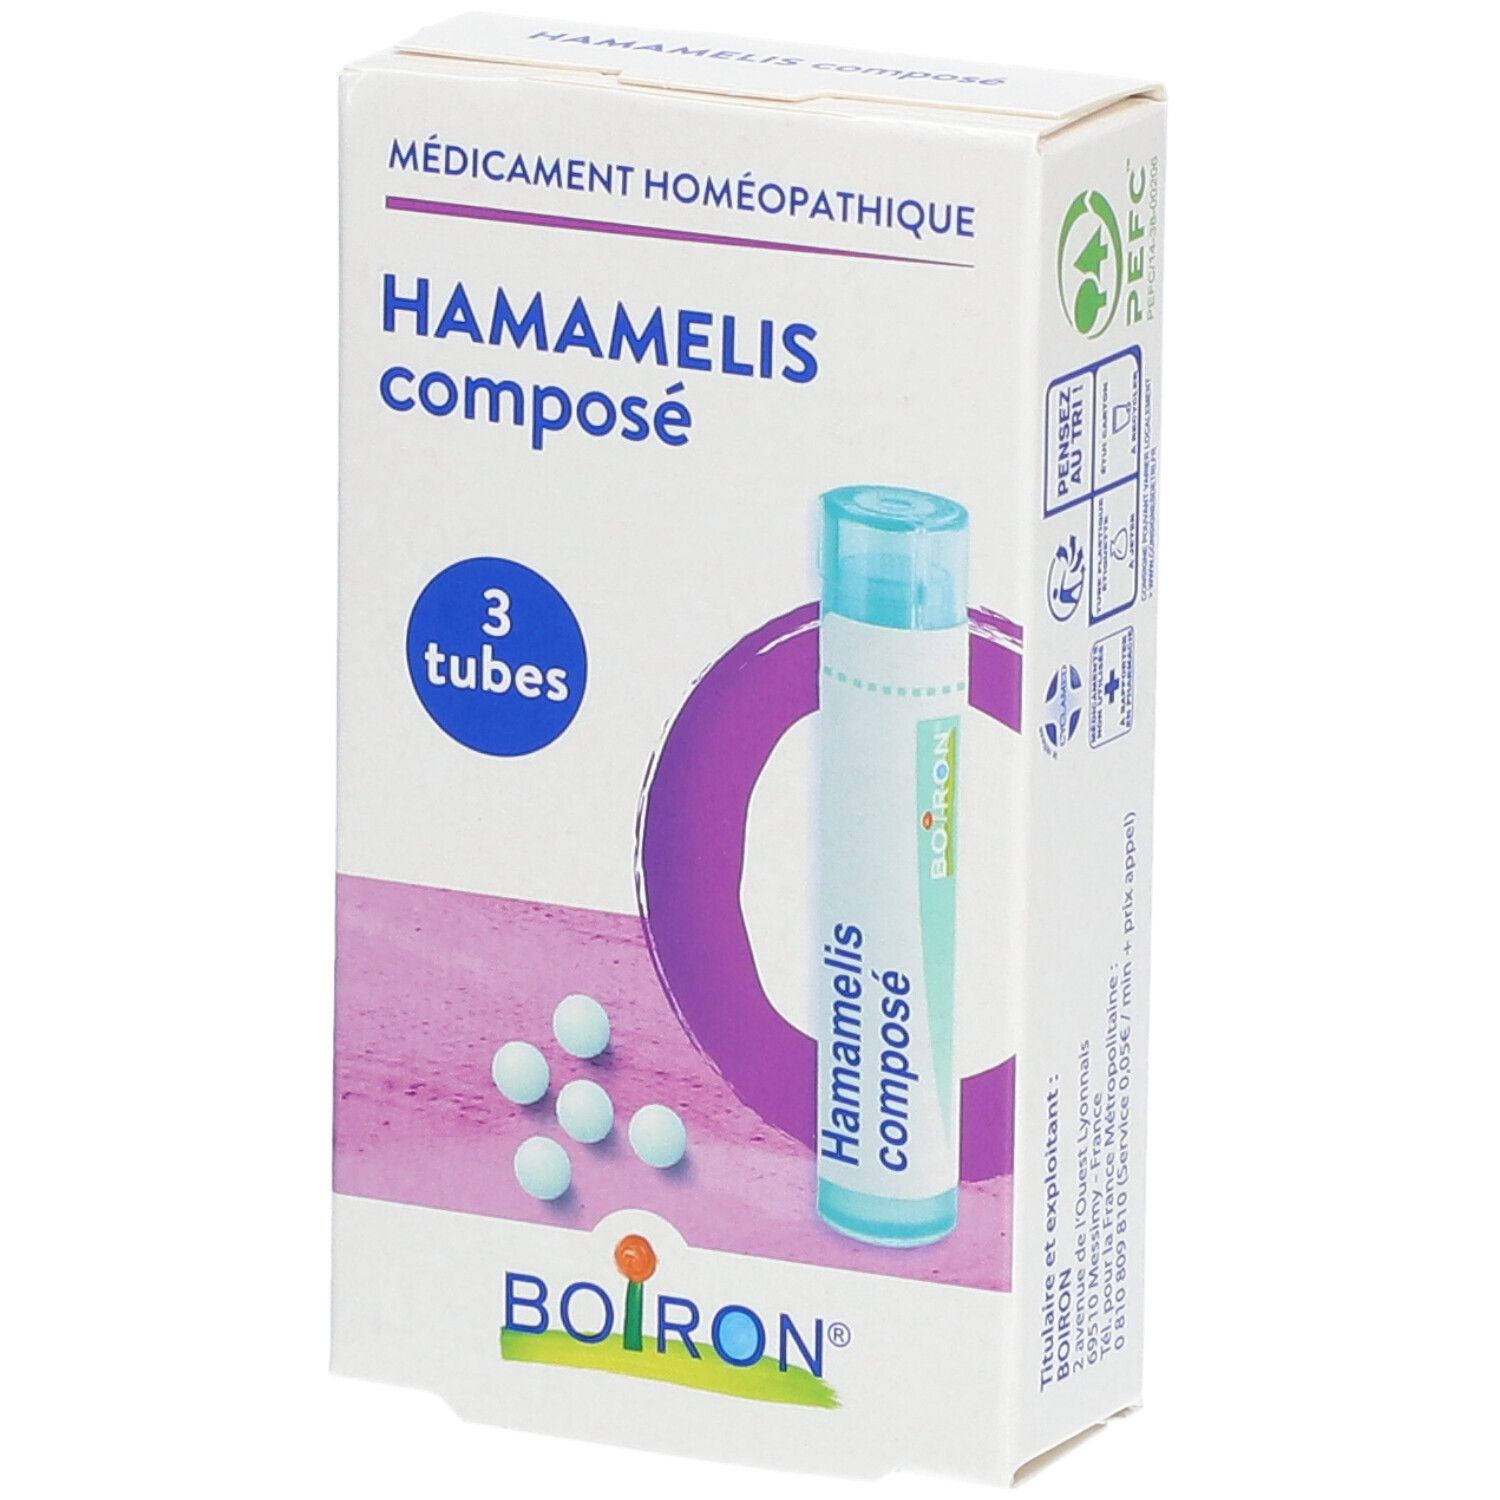 Boiron® Hamamelis composé